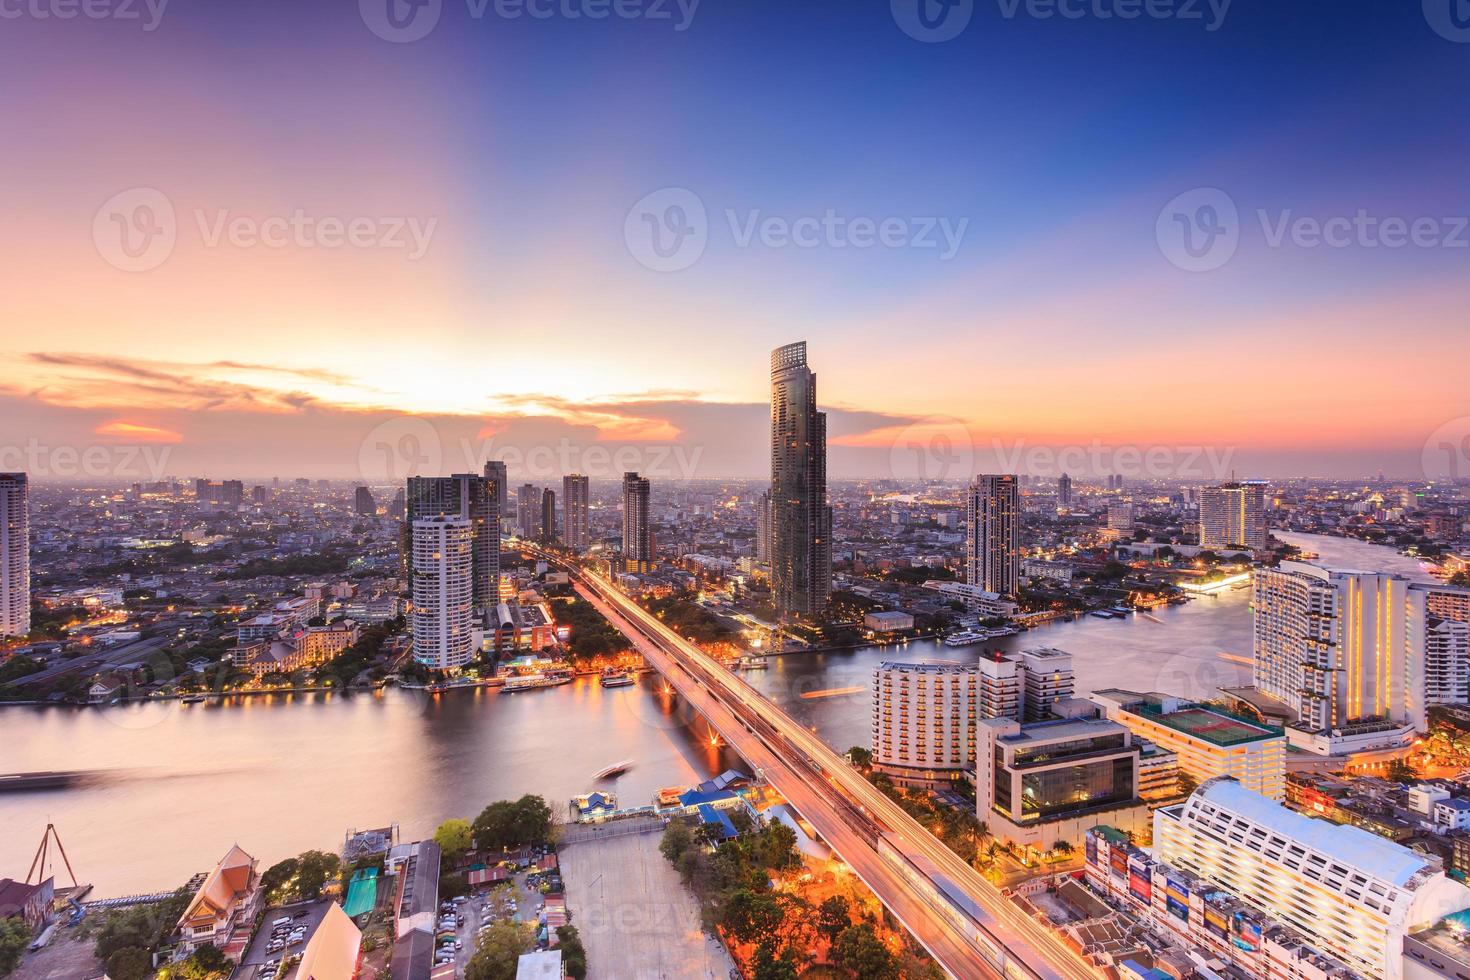 paisagem urbana de bangkok foto